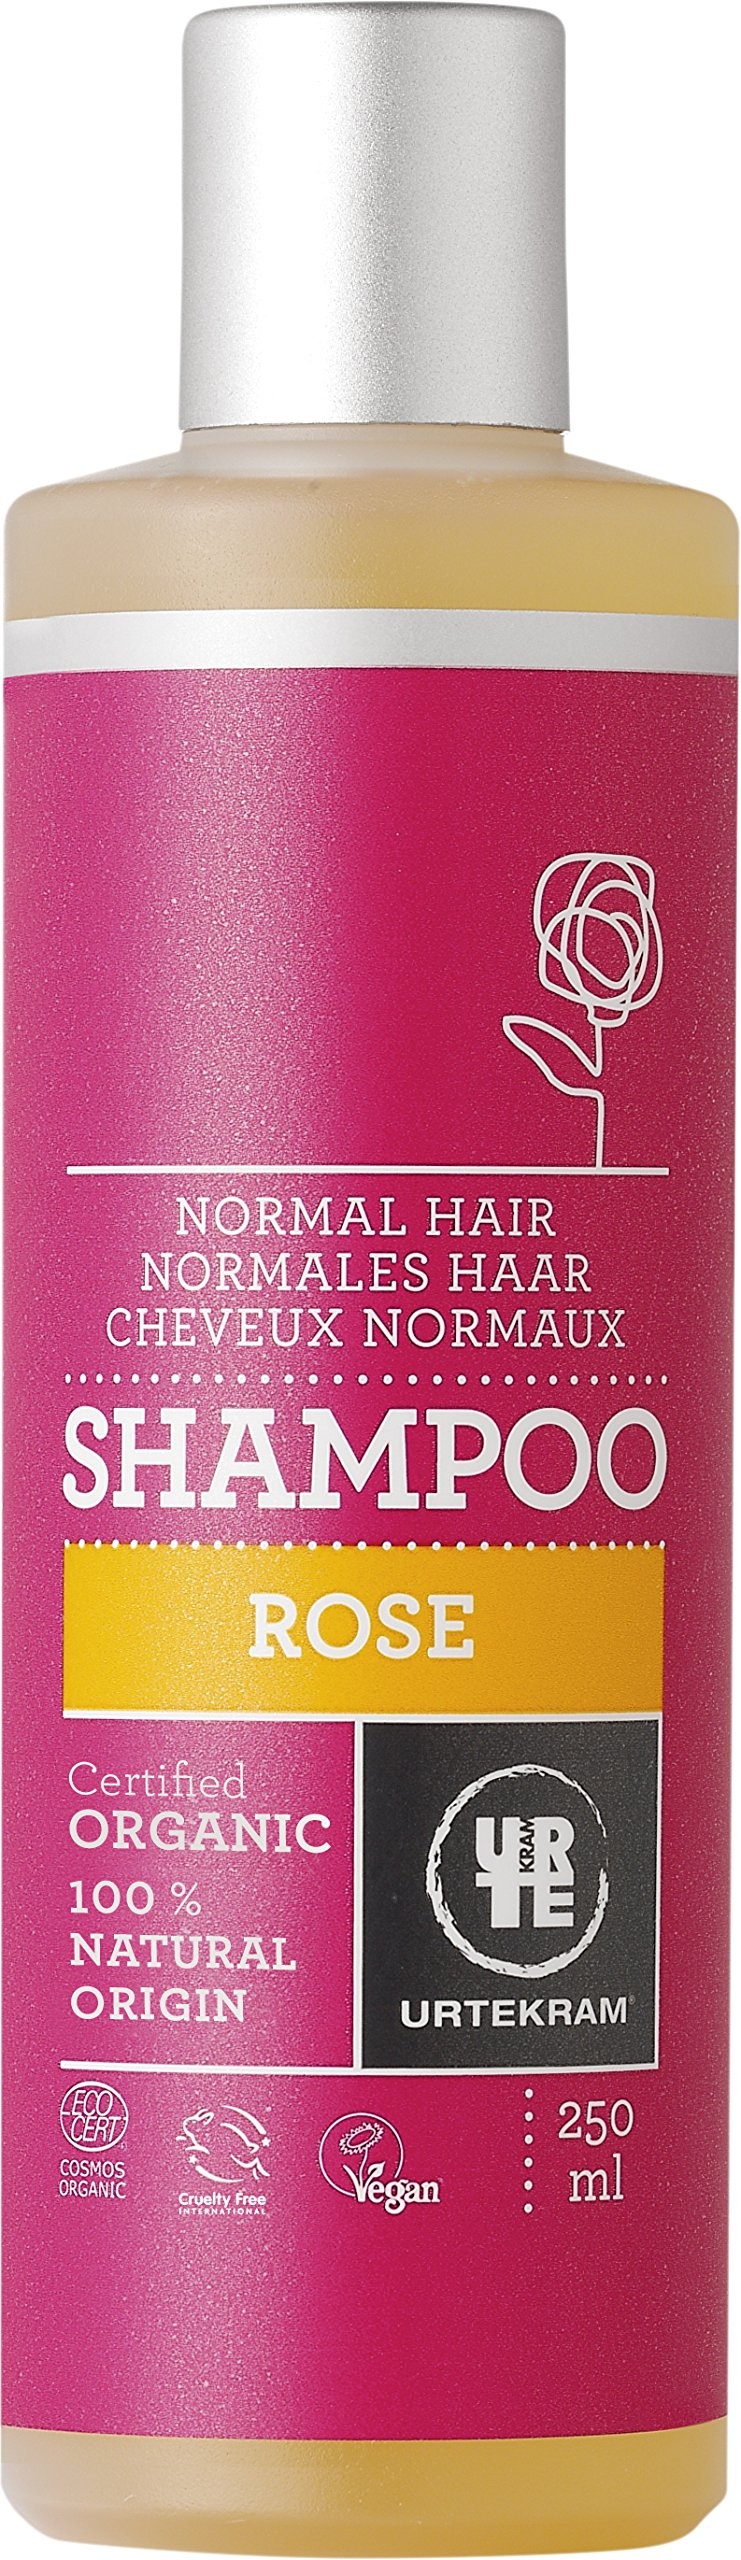 urtekram rose shampoo